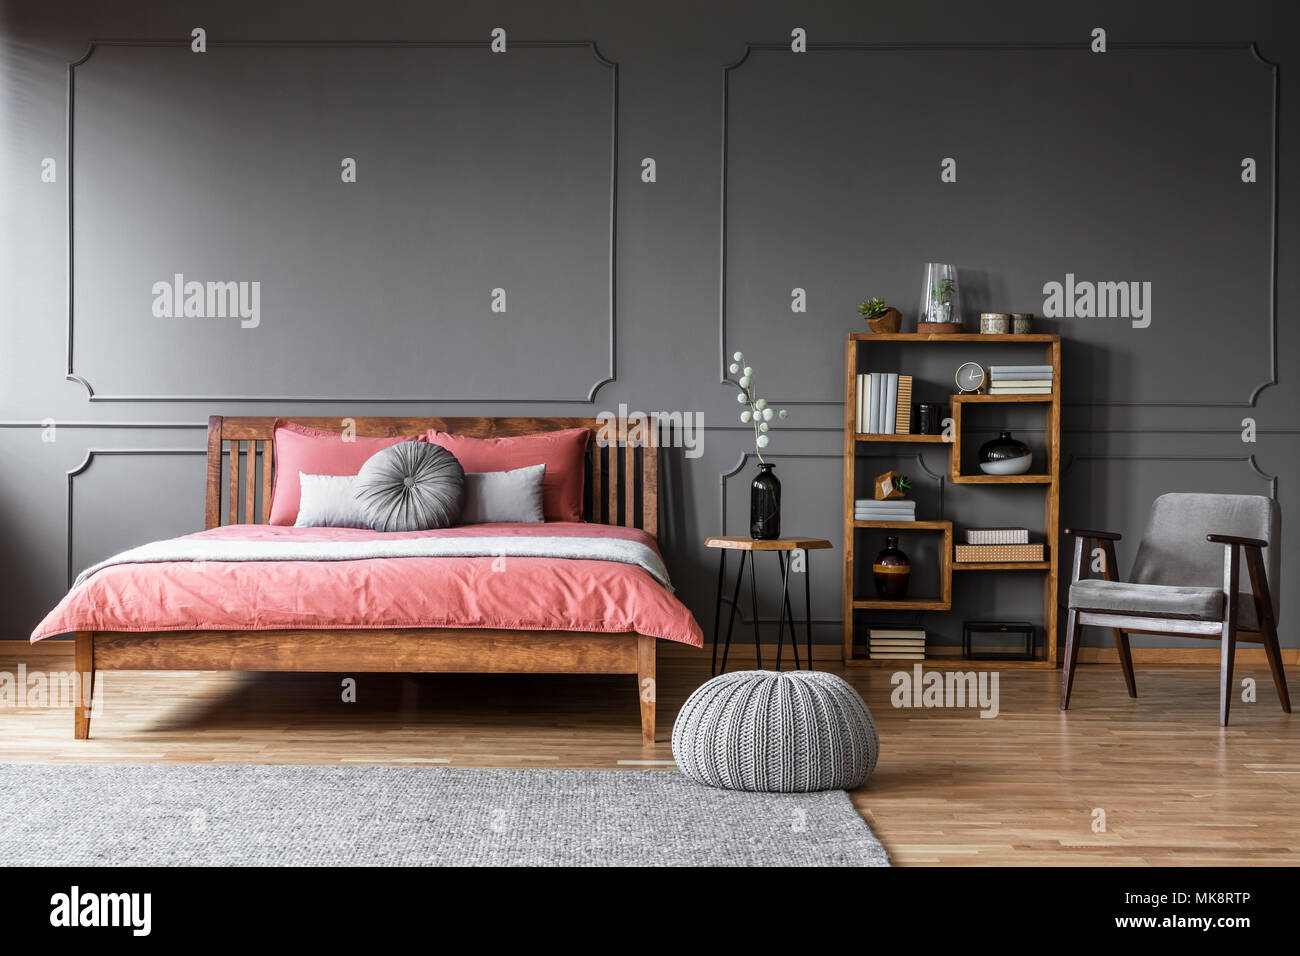 Puf gris cerca de la cama de madera con sábanas de color rosa en el elegante interior del dormitorio con sillón Foto de stock